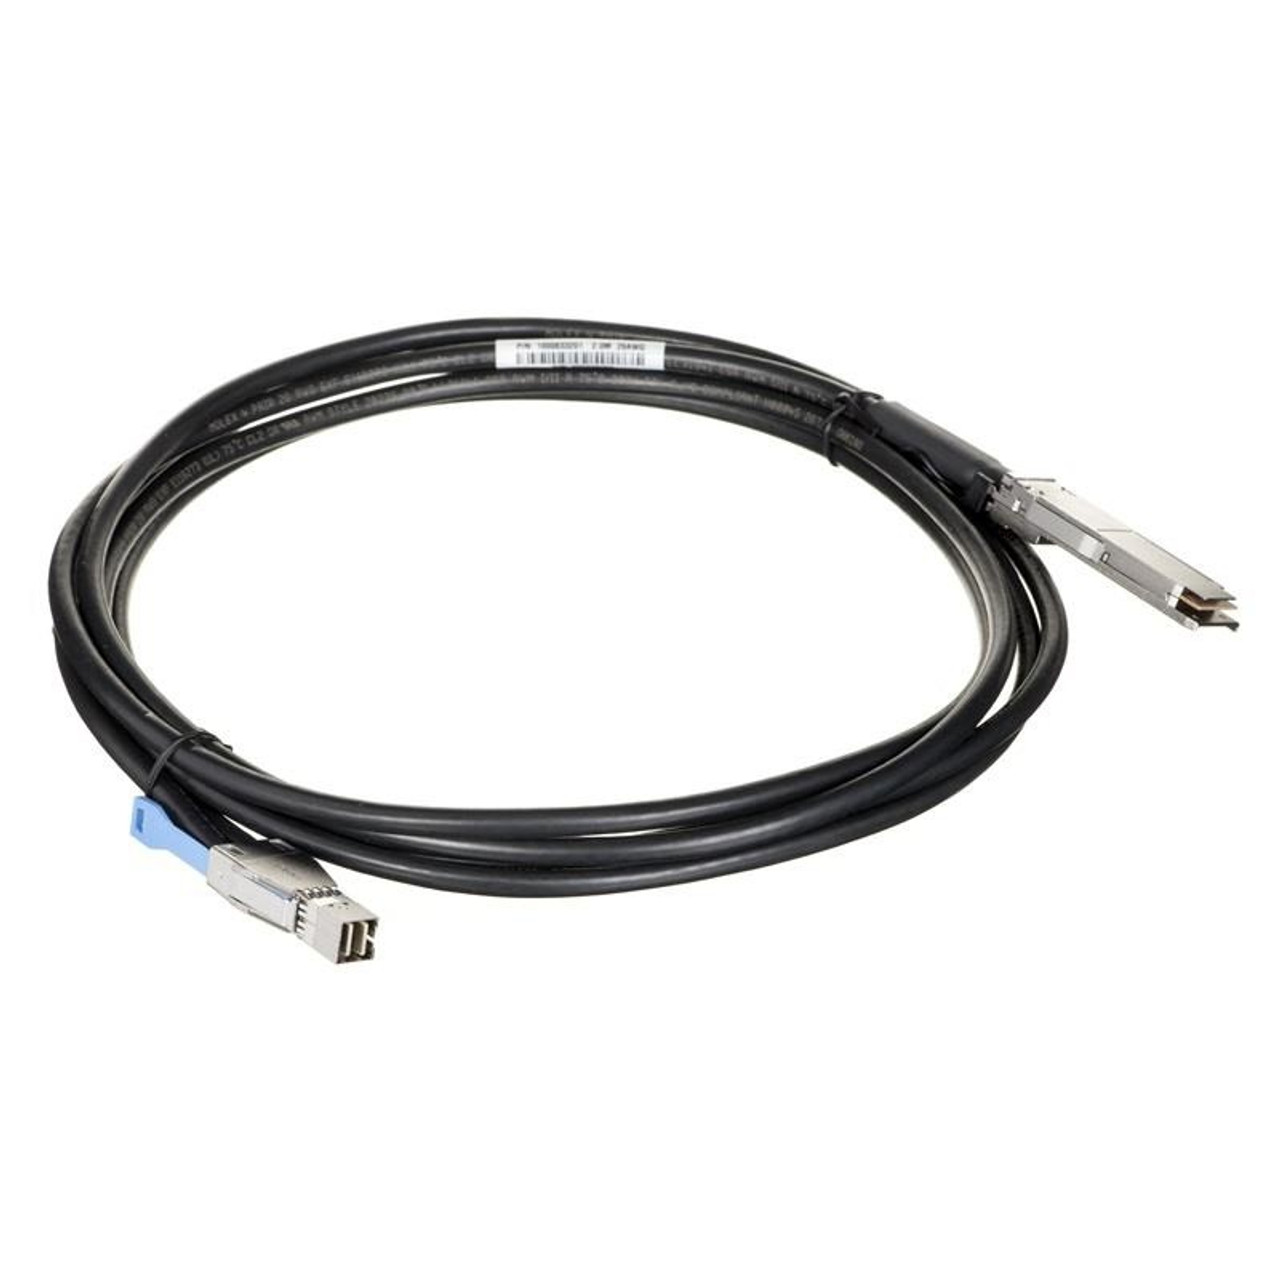 1EX0085 | HGST | Serial Attached SCSI (SAS) cable 78.7" (2 m) Black